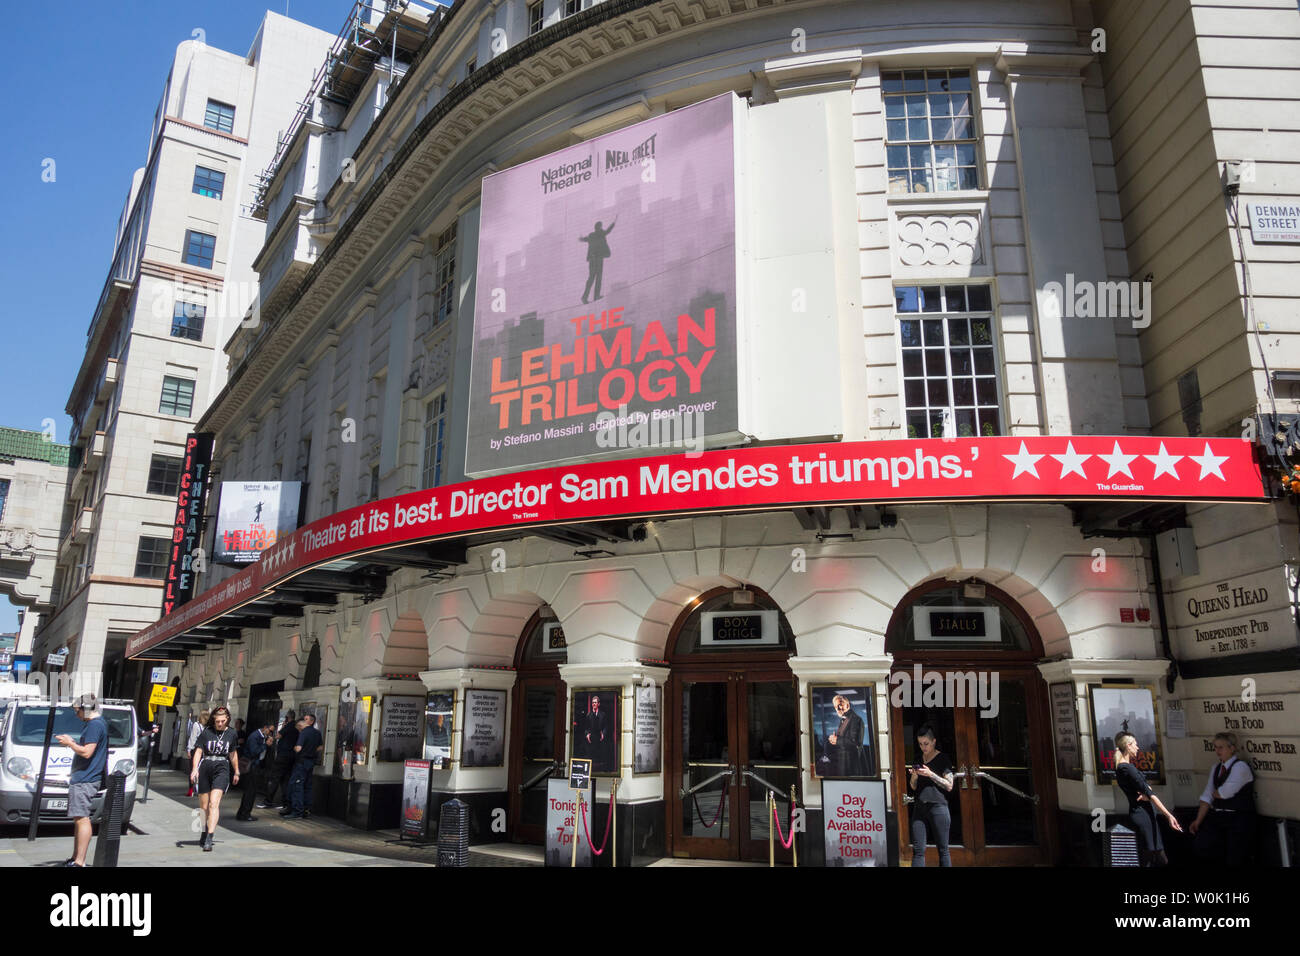 Stefano Massini des Lehman Trilogie im Piccadilly Theatre unter der Regie von Sam Mendes Stockfoto